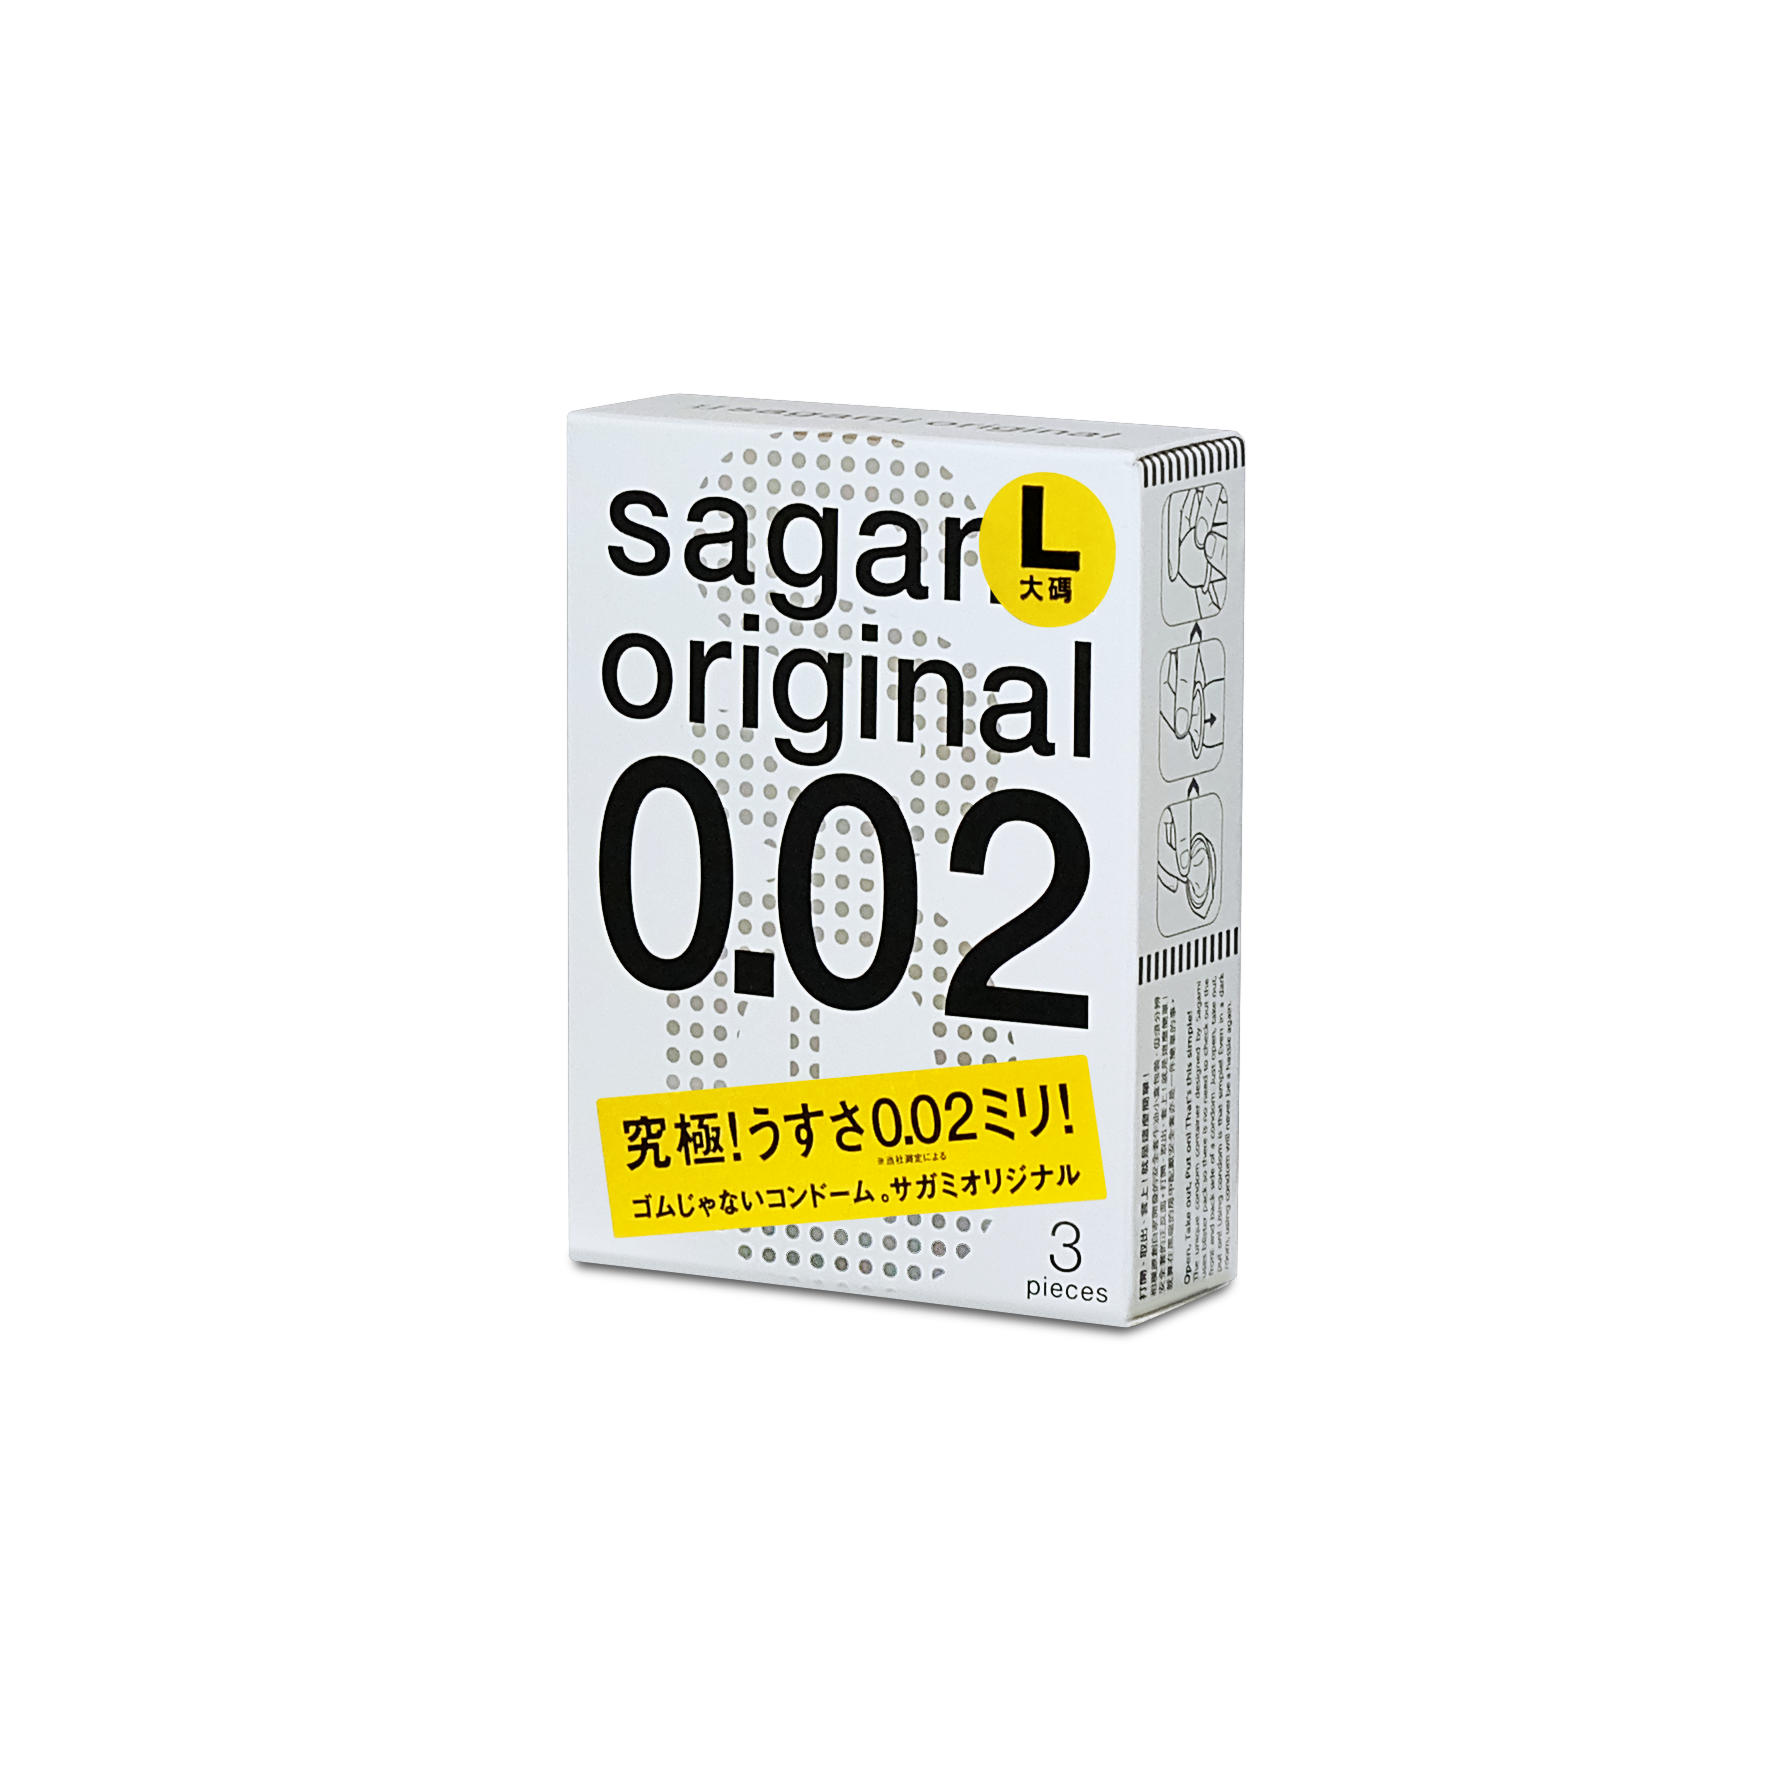 Sagami Original 0.02  <span>3-Pack</span>